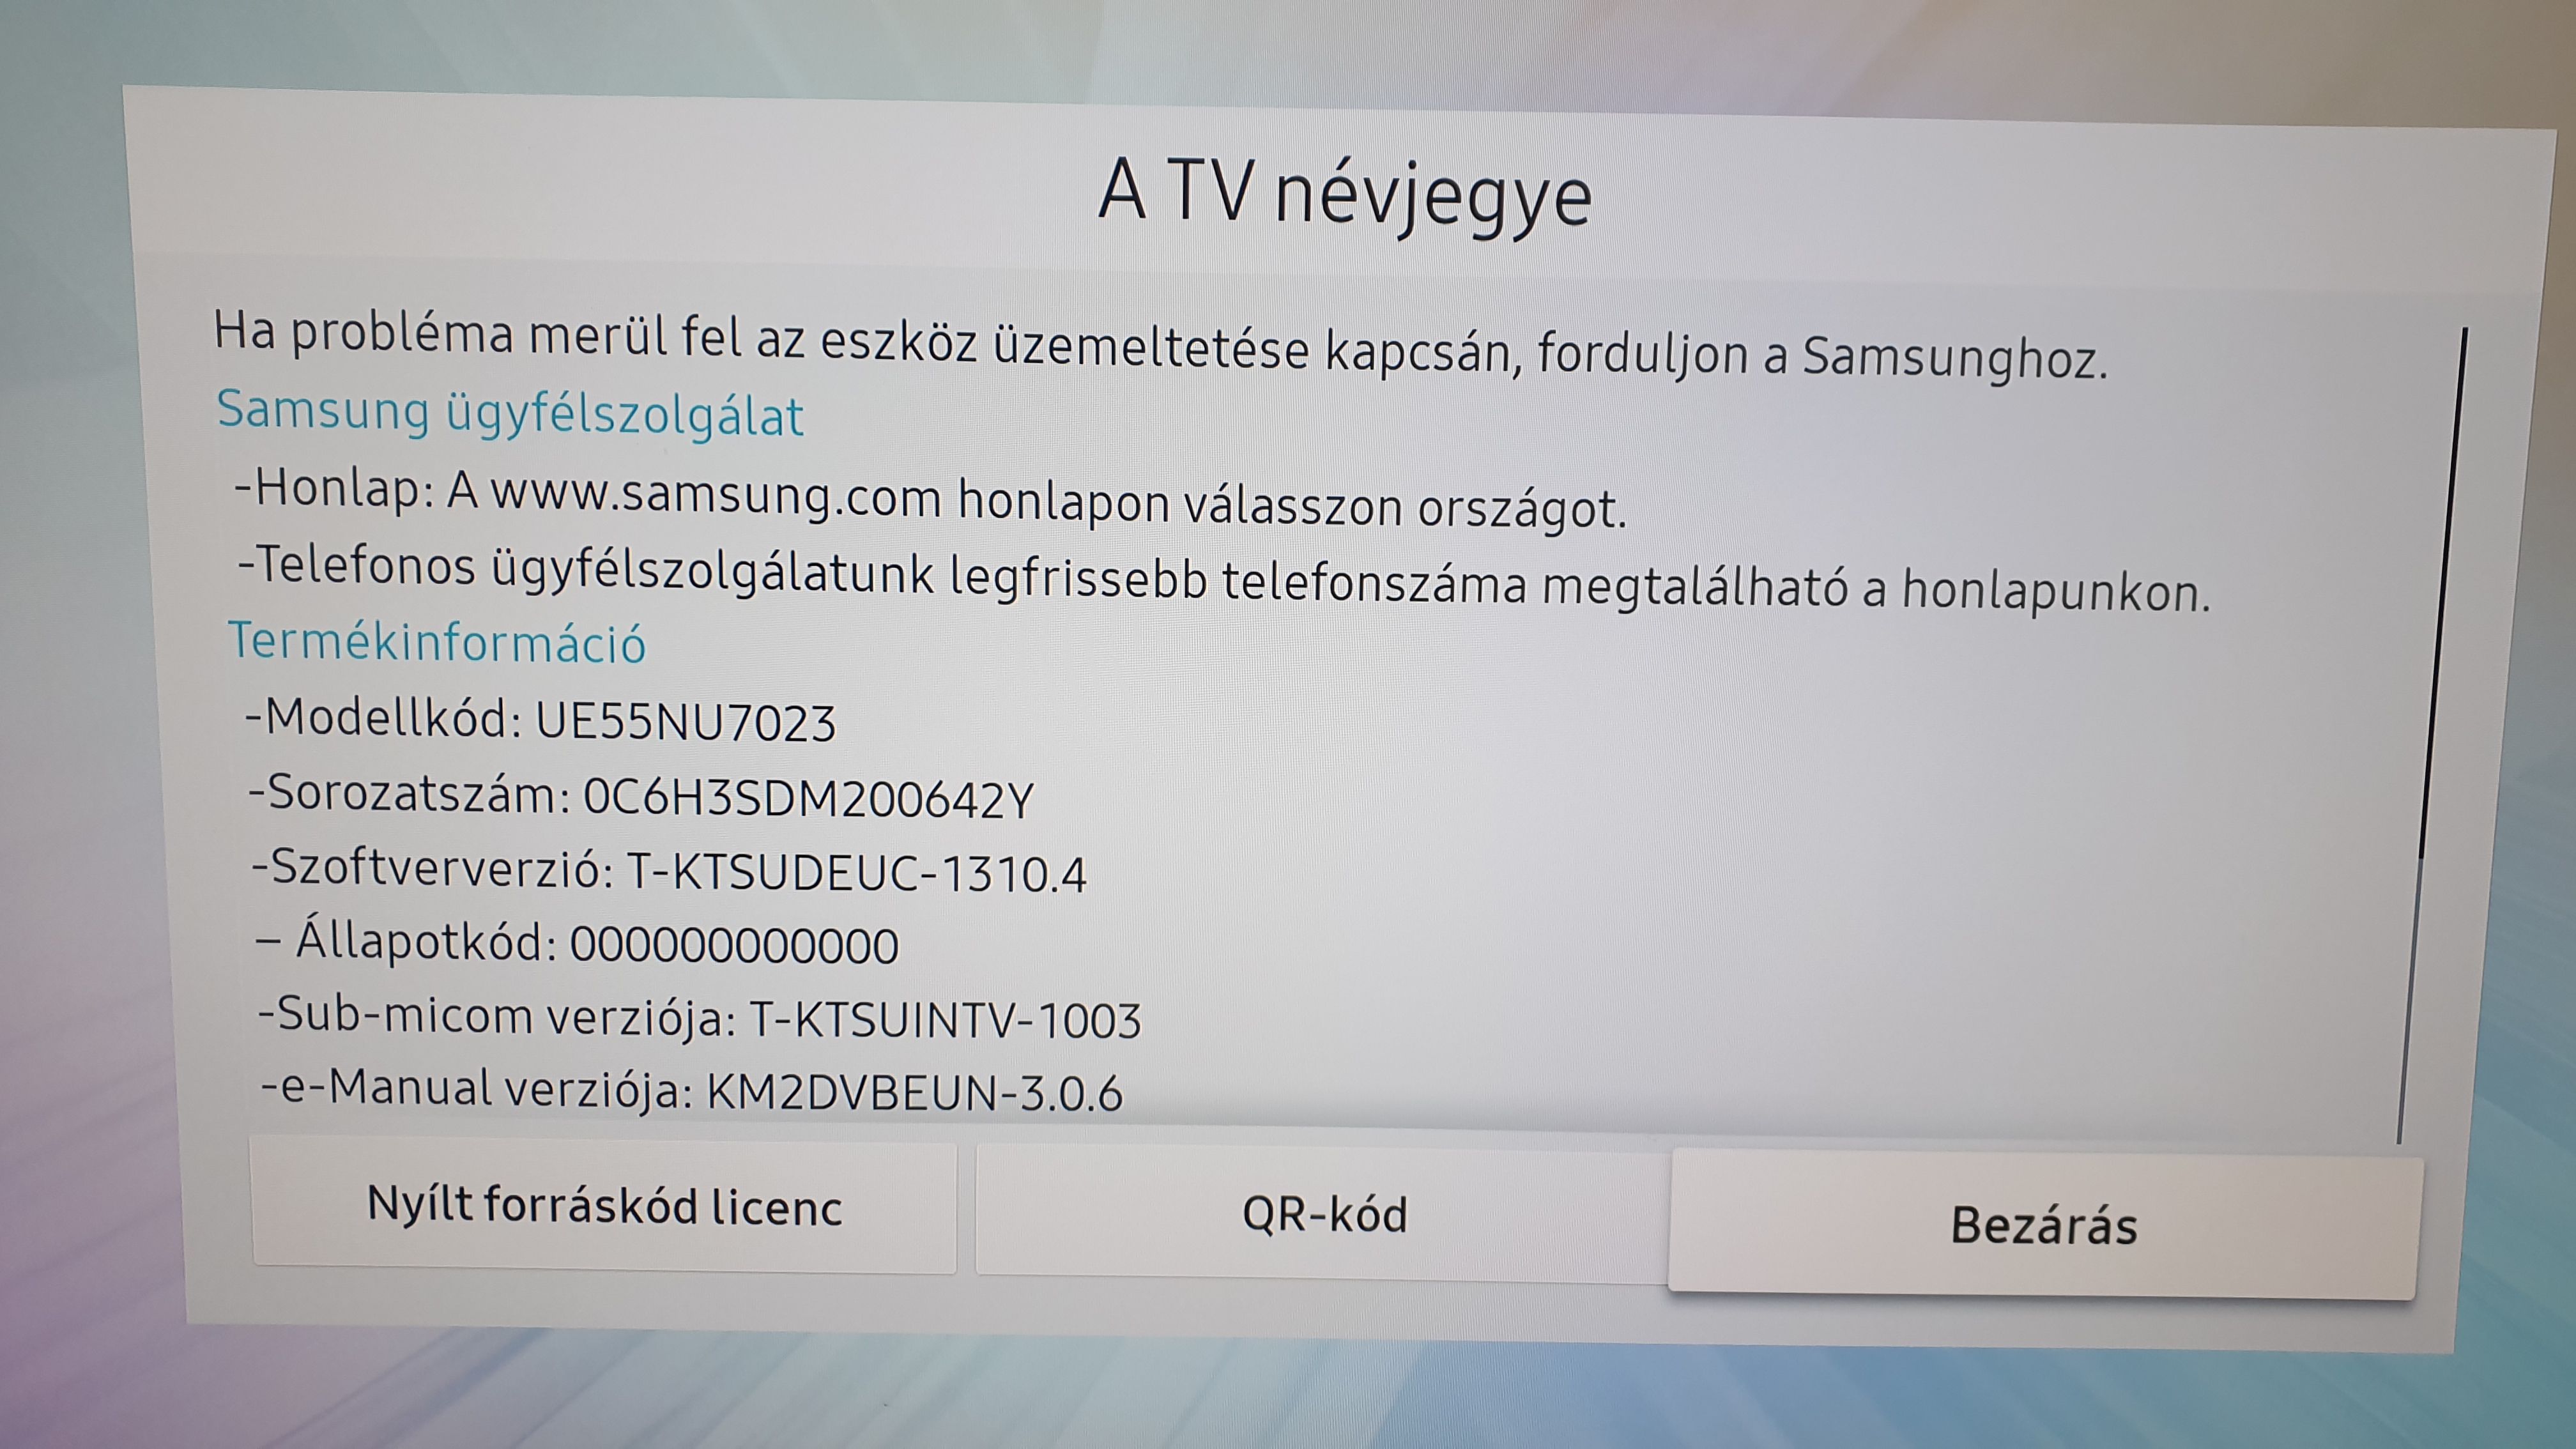 Samsung CI+ modil nem található? - Samsung Community